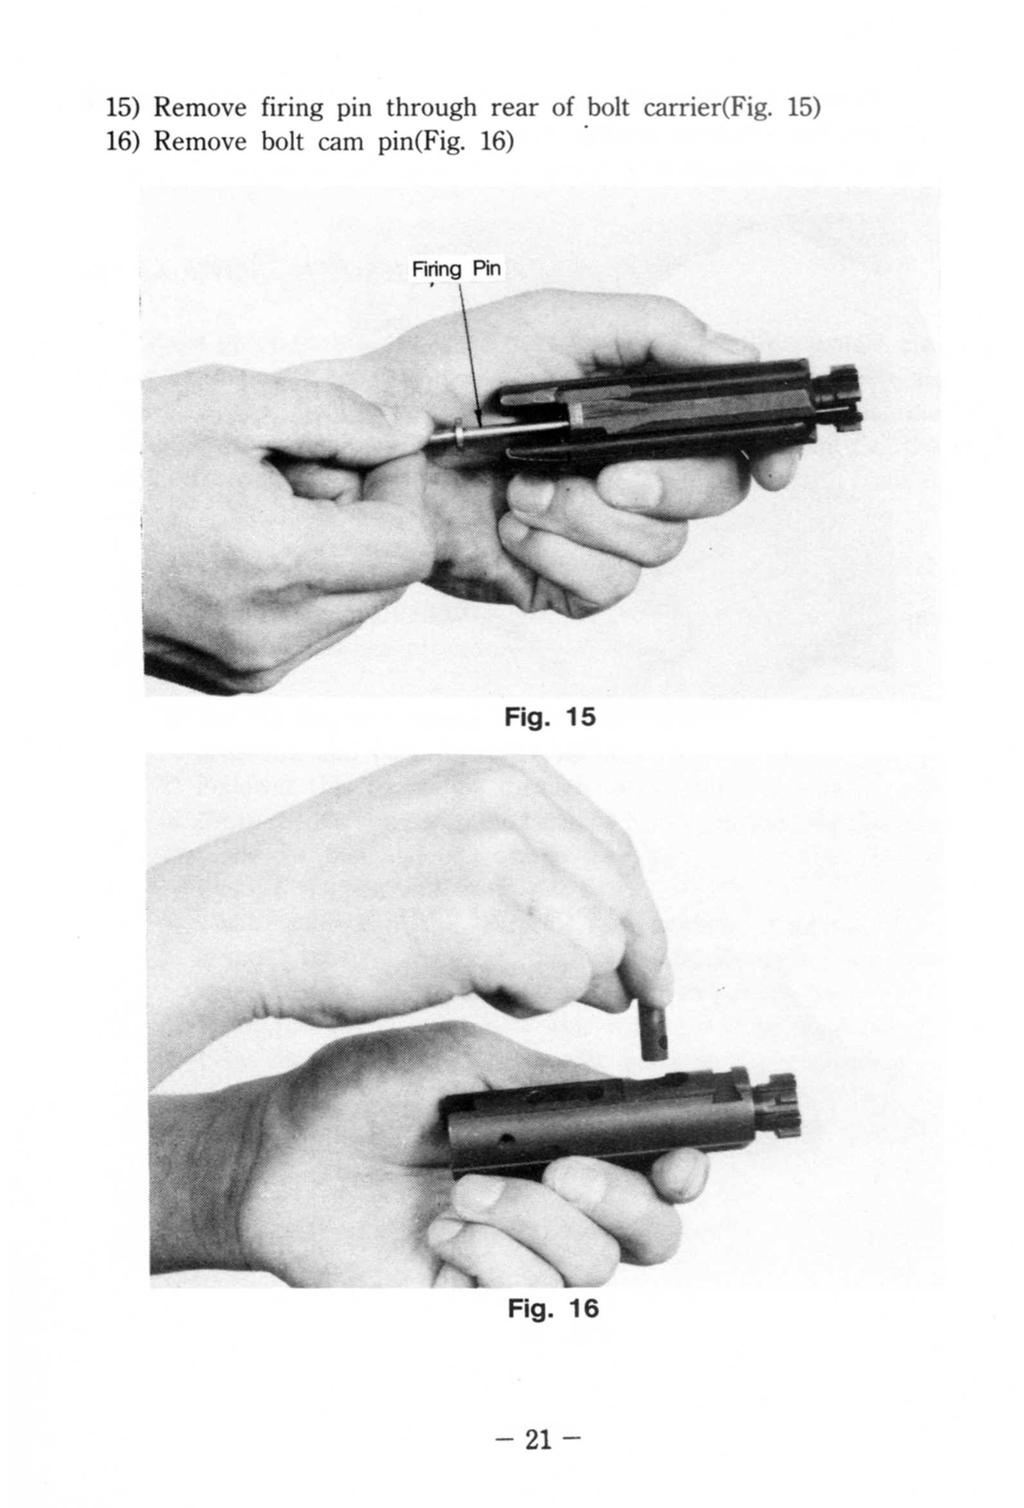 15) Remove firing pin through rear of bolt earrier(fig. 15).